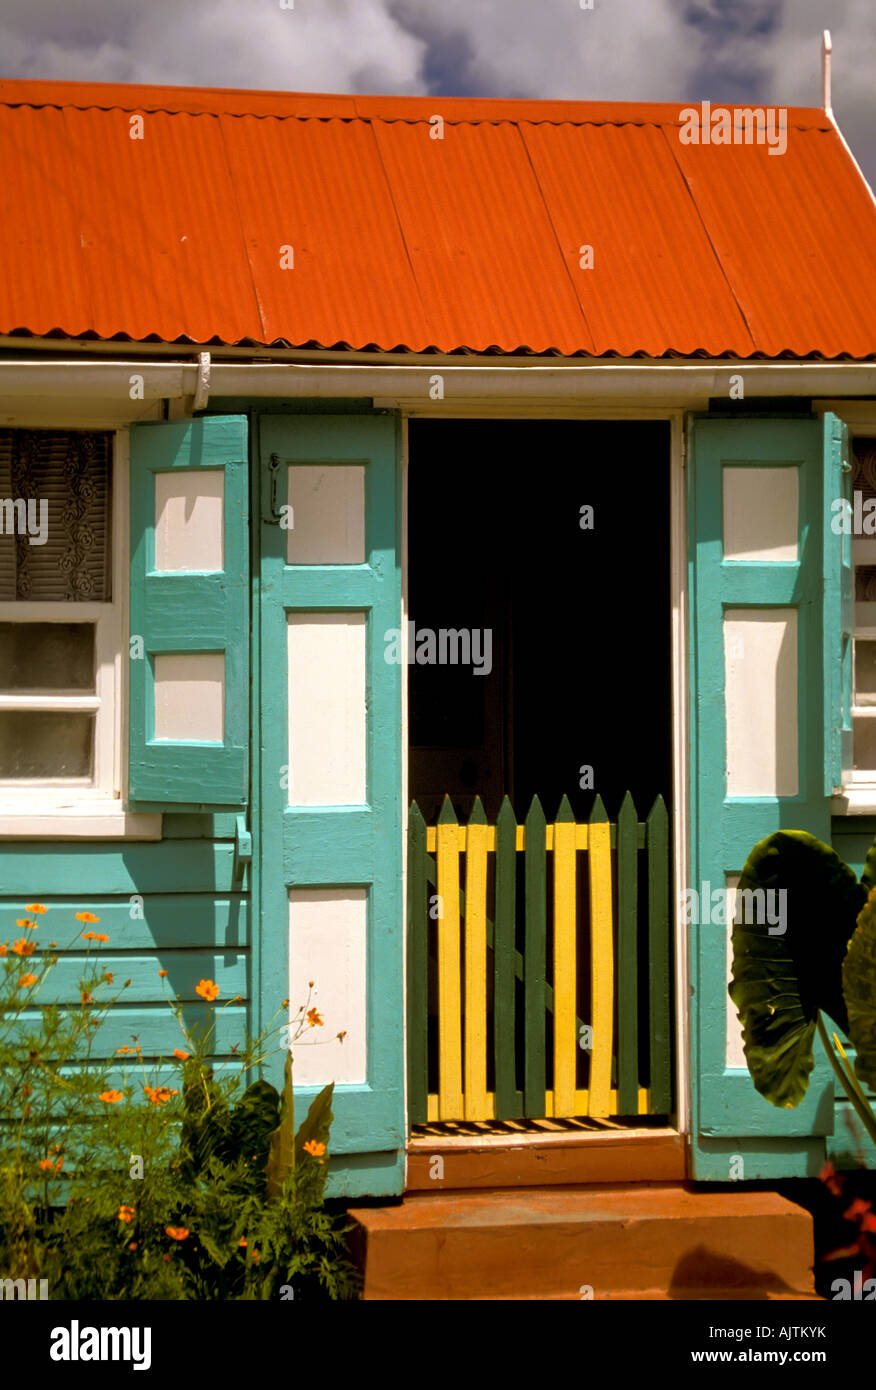 Île de Nevis St Kitts et Nevis, l'île des Caraïbes accueil traditionnels colorés vert blanc rouge bâtiment architecture Charlestown Banque D'Images